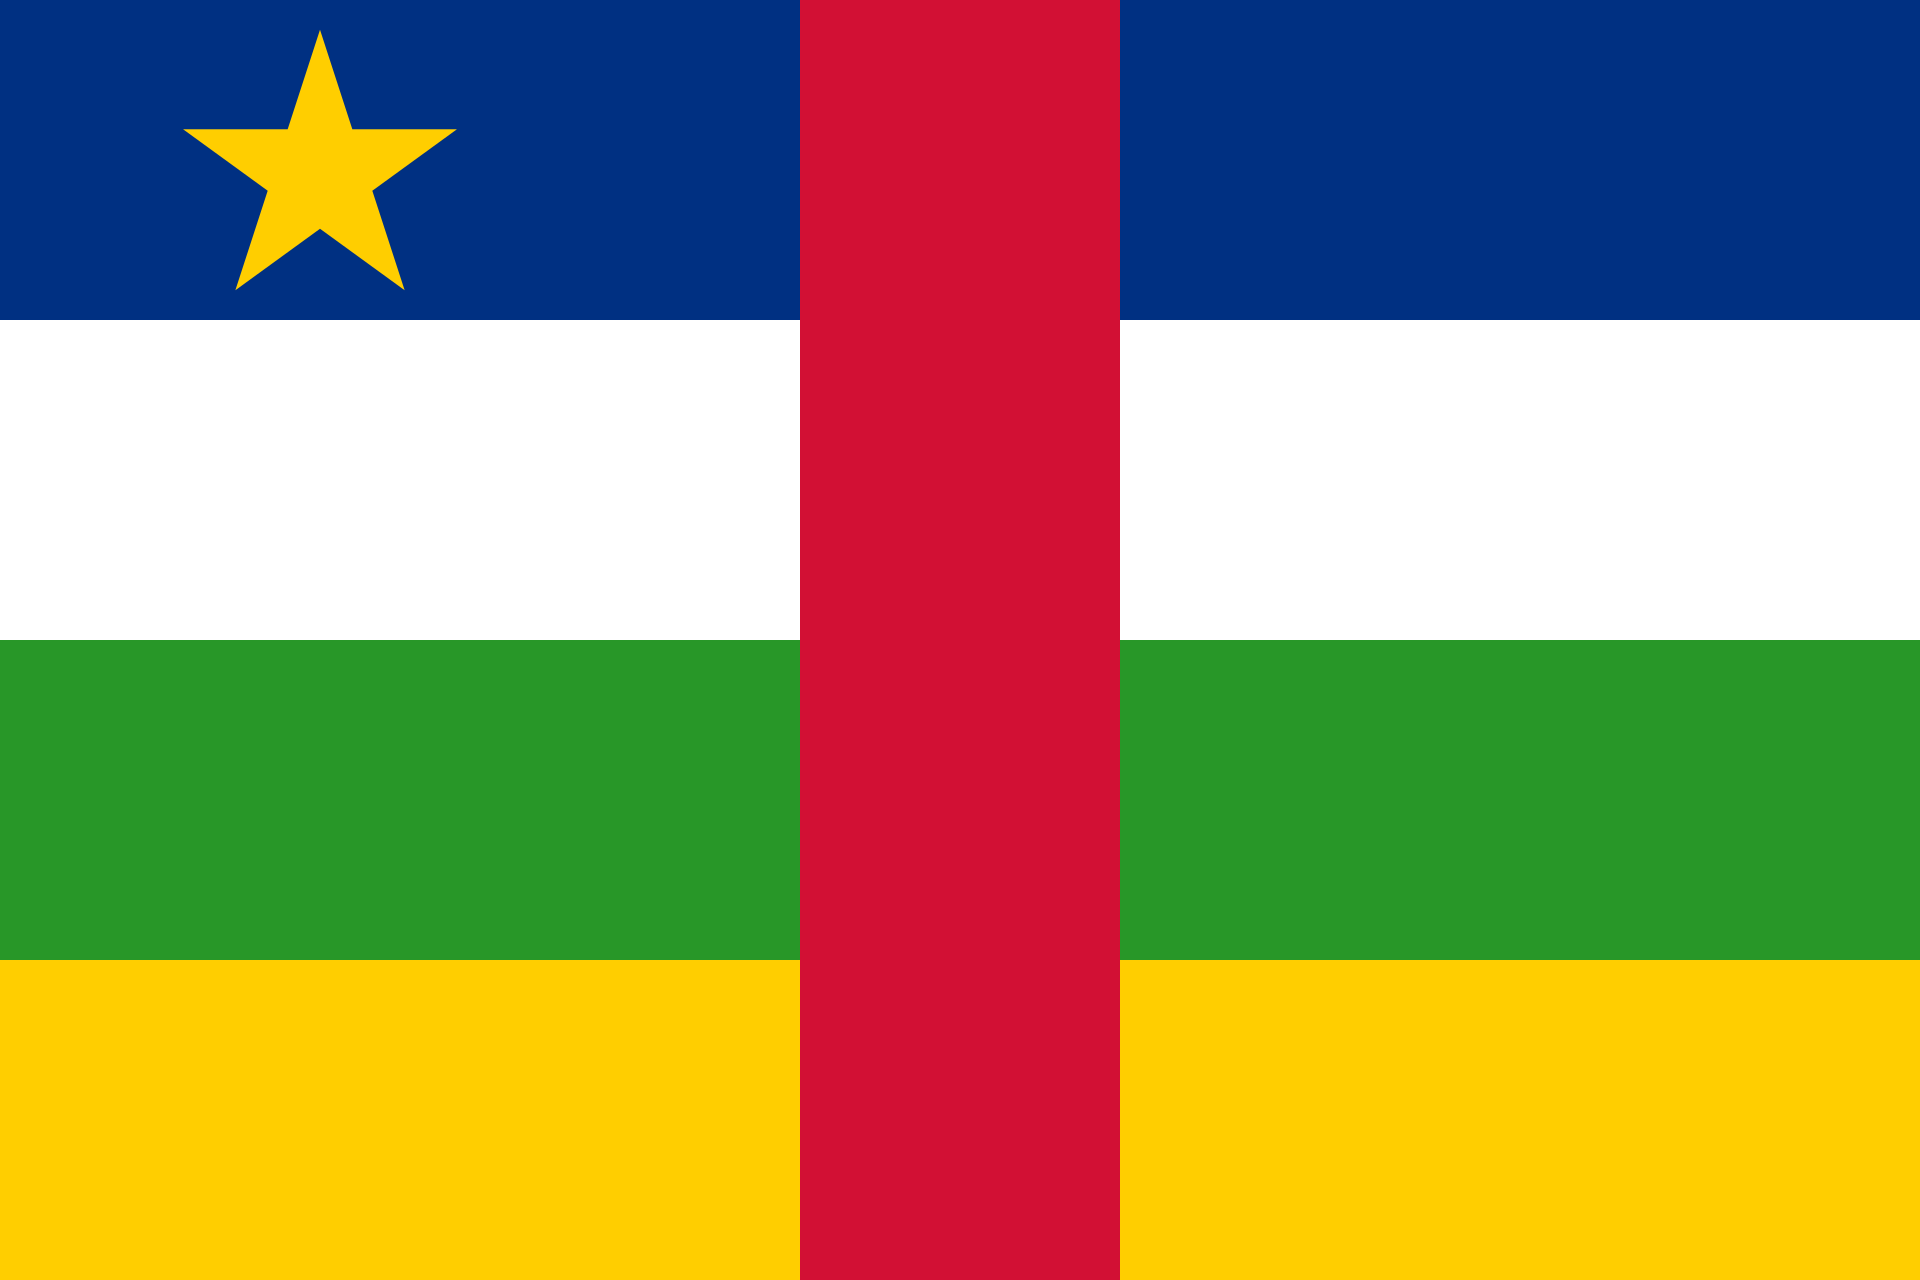 Σημαία της Κεντροαφρικανικής Δημοκρατίας